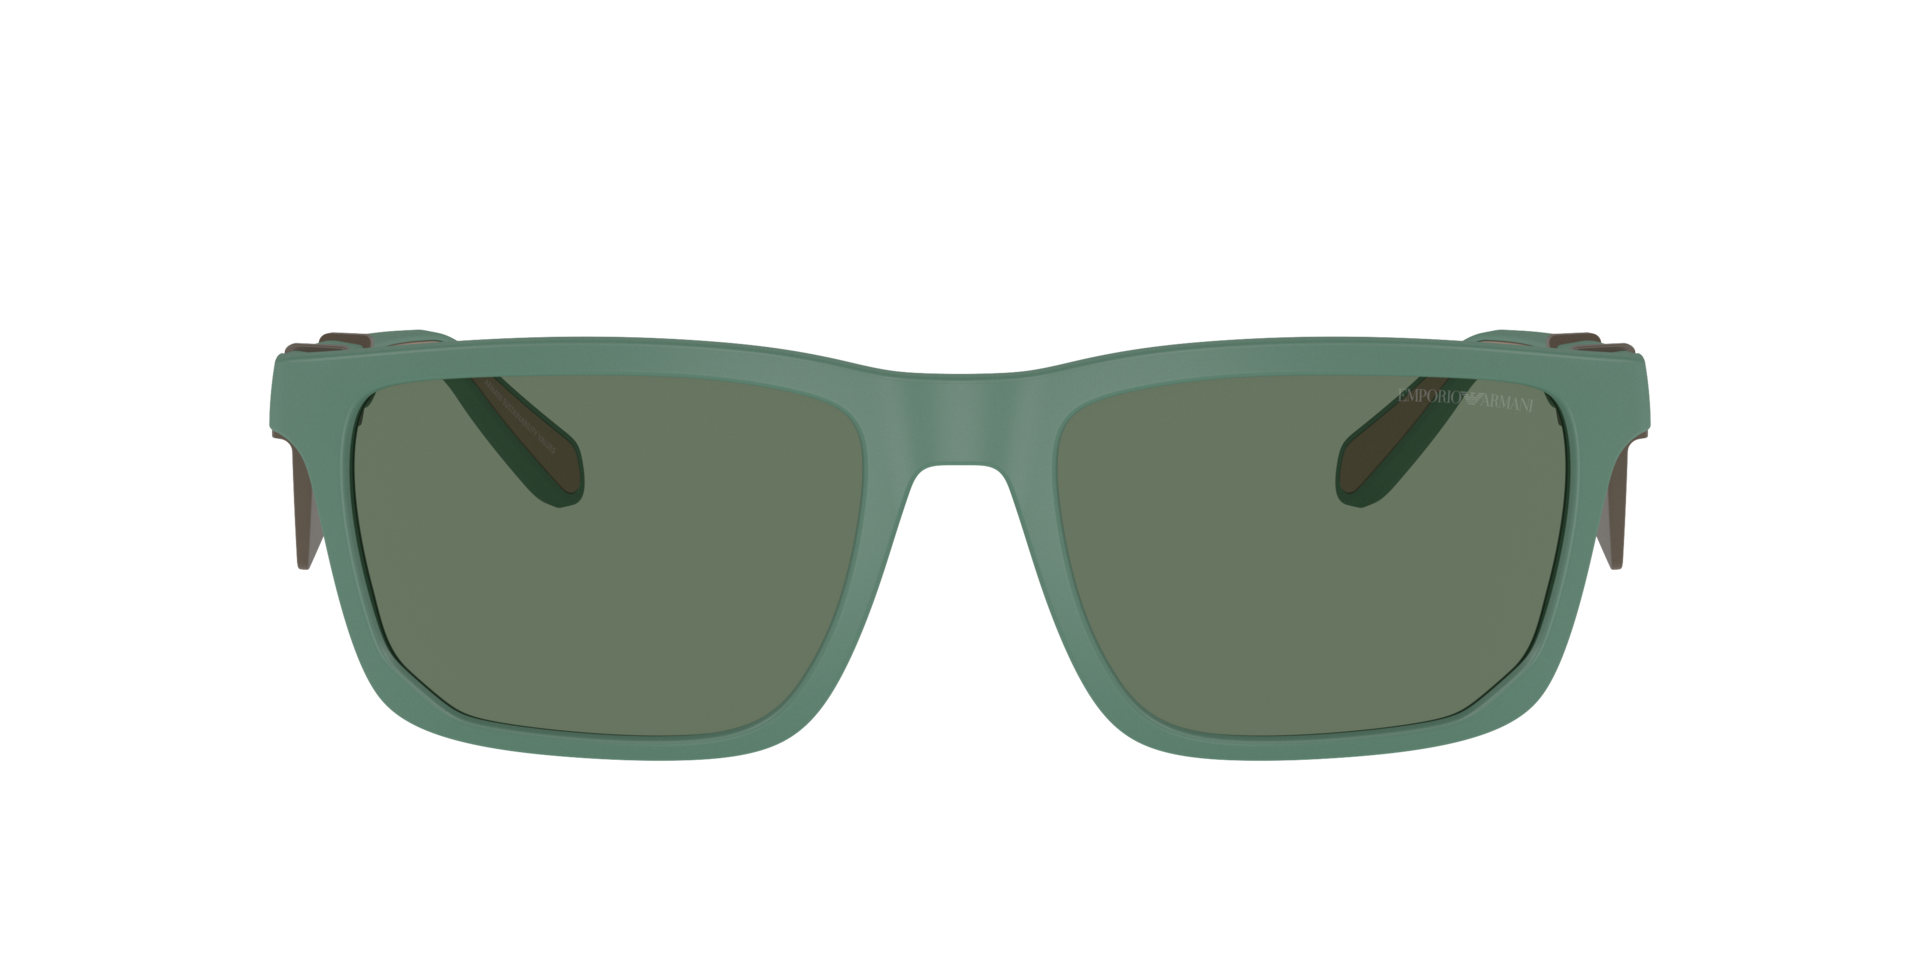 Das Bild zeigt die Sonnenbrille EA4219 610276 von der Marke Emporio Armani in Matt grün.